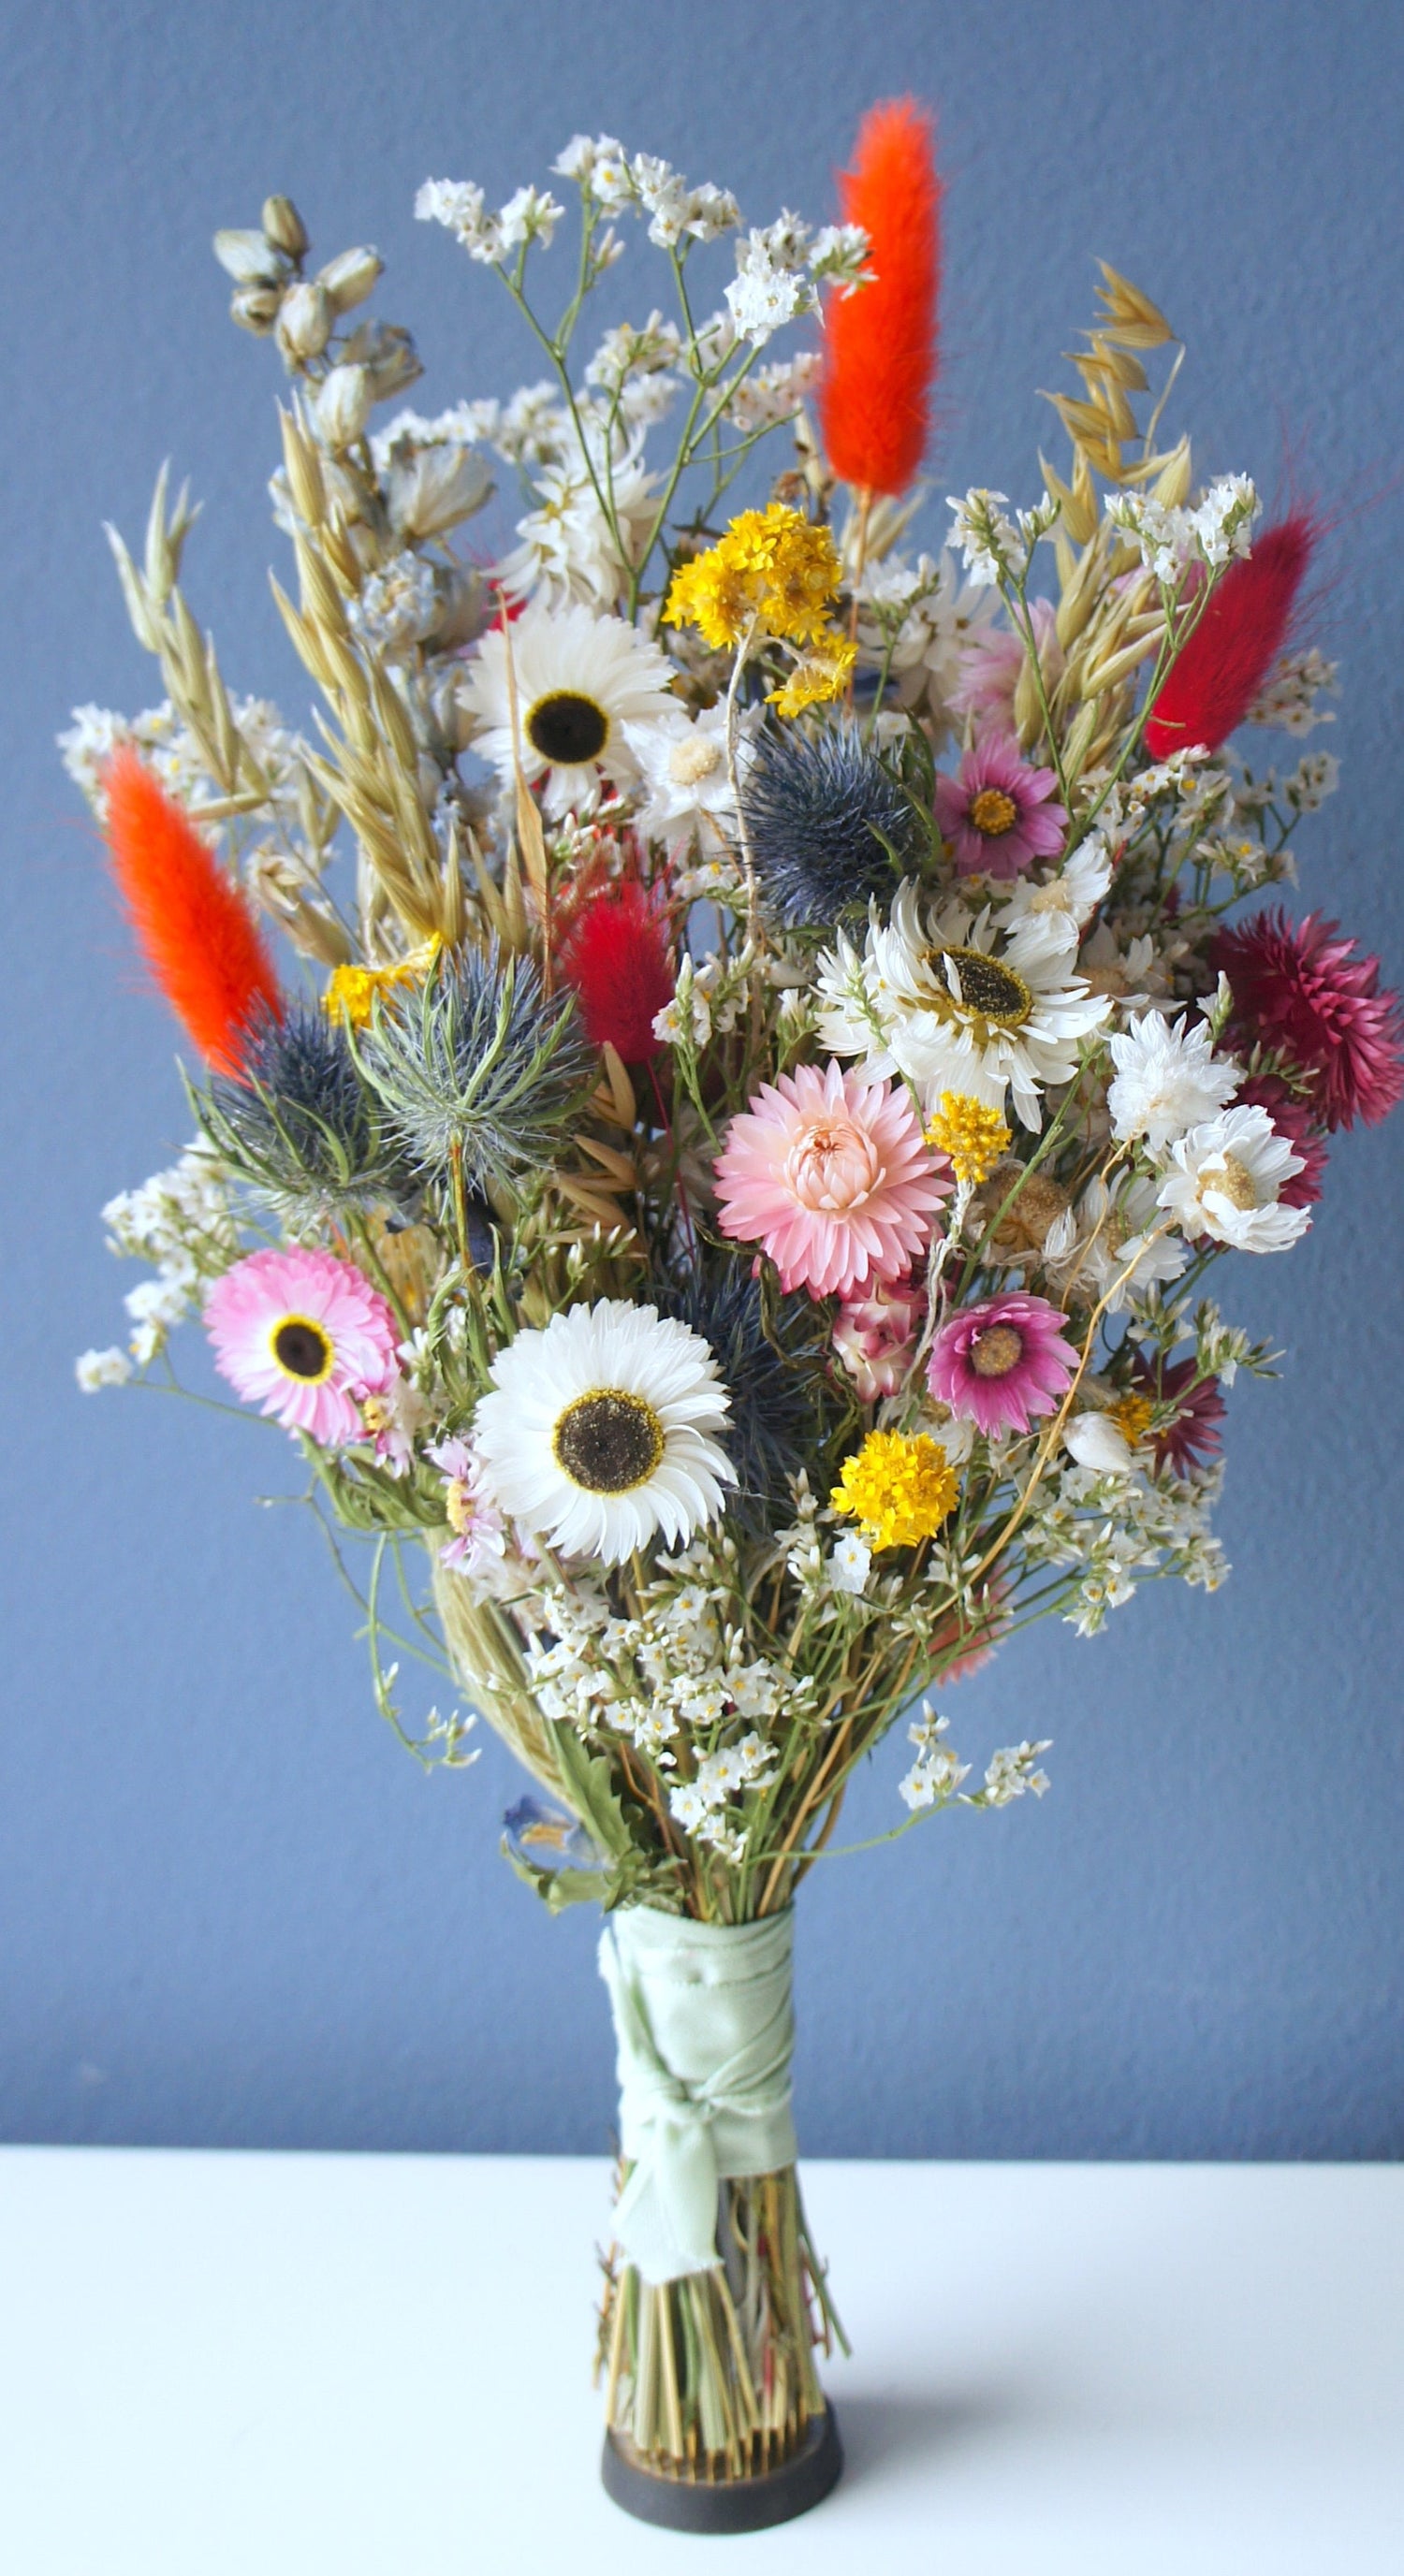 BUNTE TAGE, Trockenblumenstrauß, Brautstrauß, Bride bouquet, Dried flowers